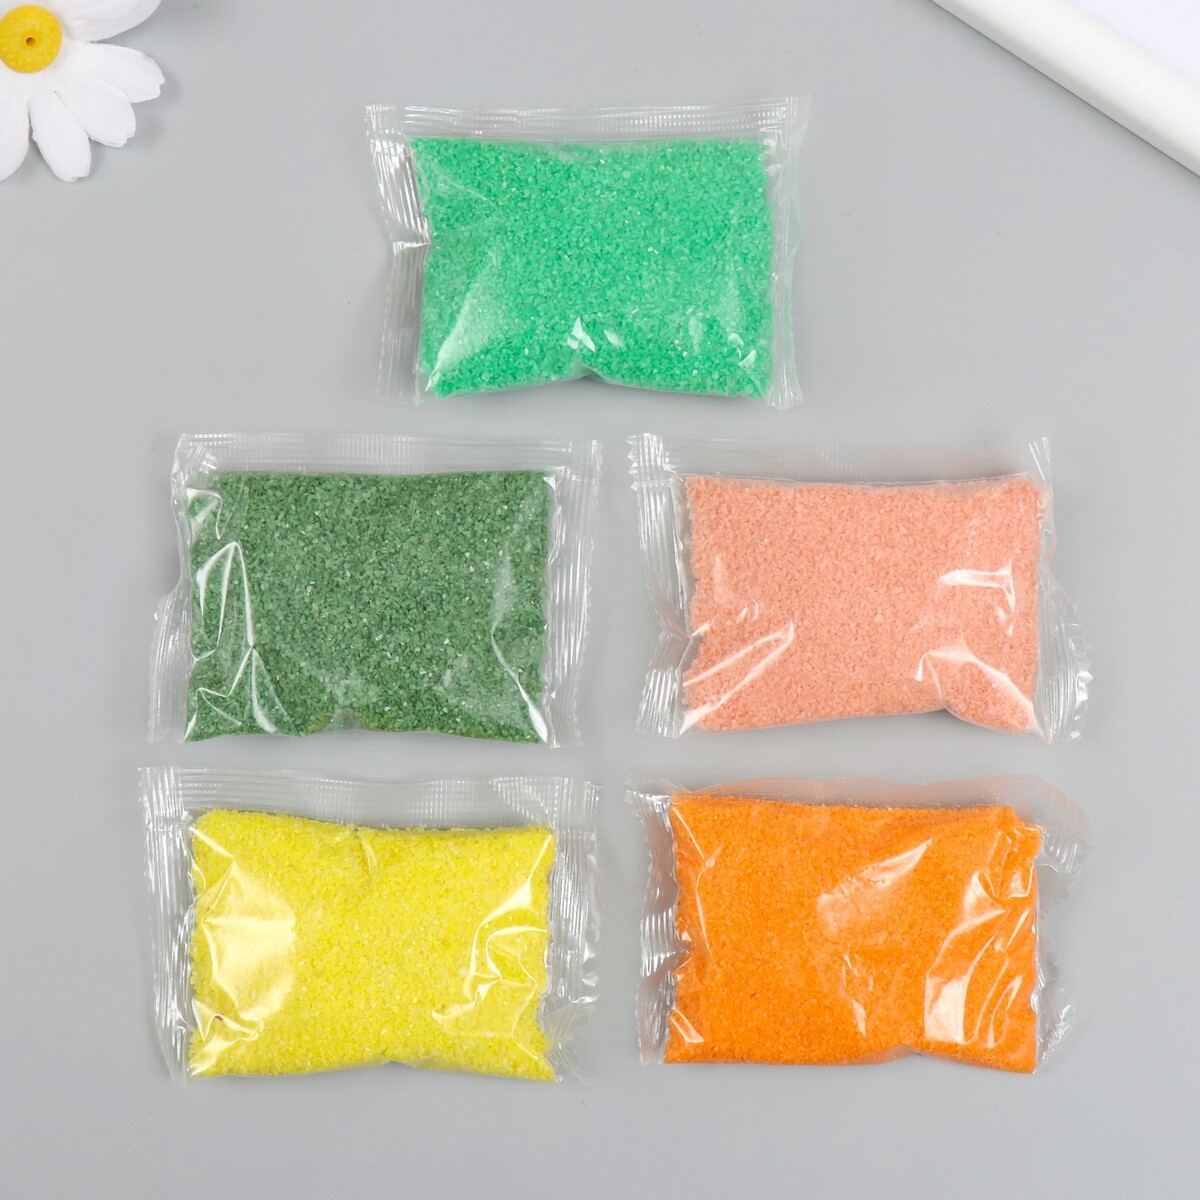 Набор цветного песка №9, 5 цветов, по 50 гр набор для творчества тм оригами пони аппликация из песка полет фантазии арт 06361